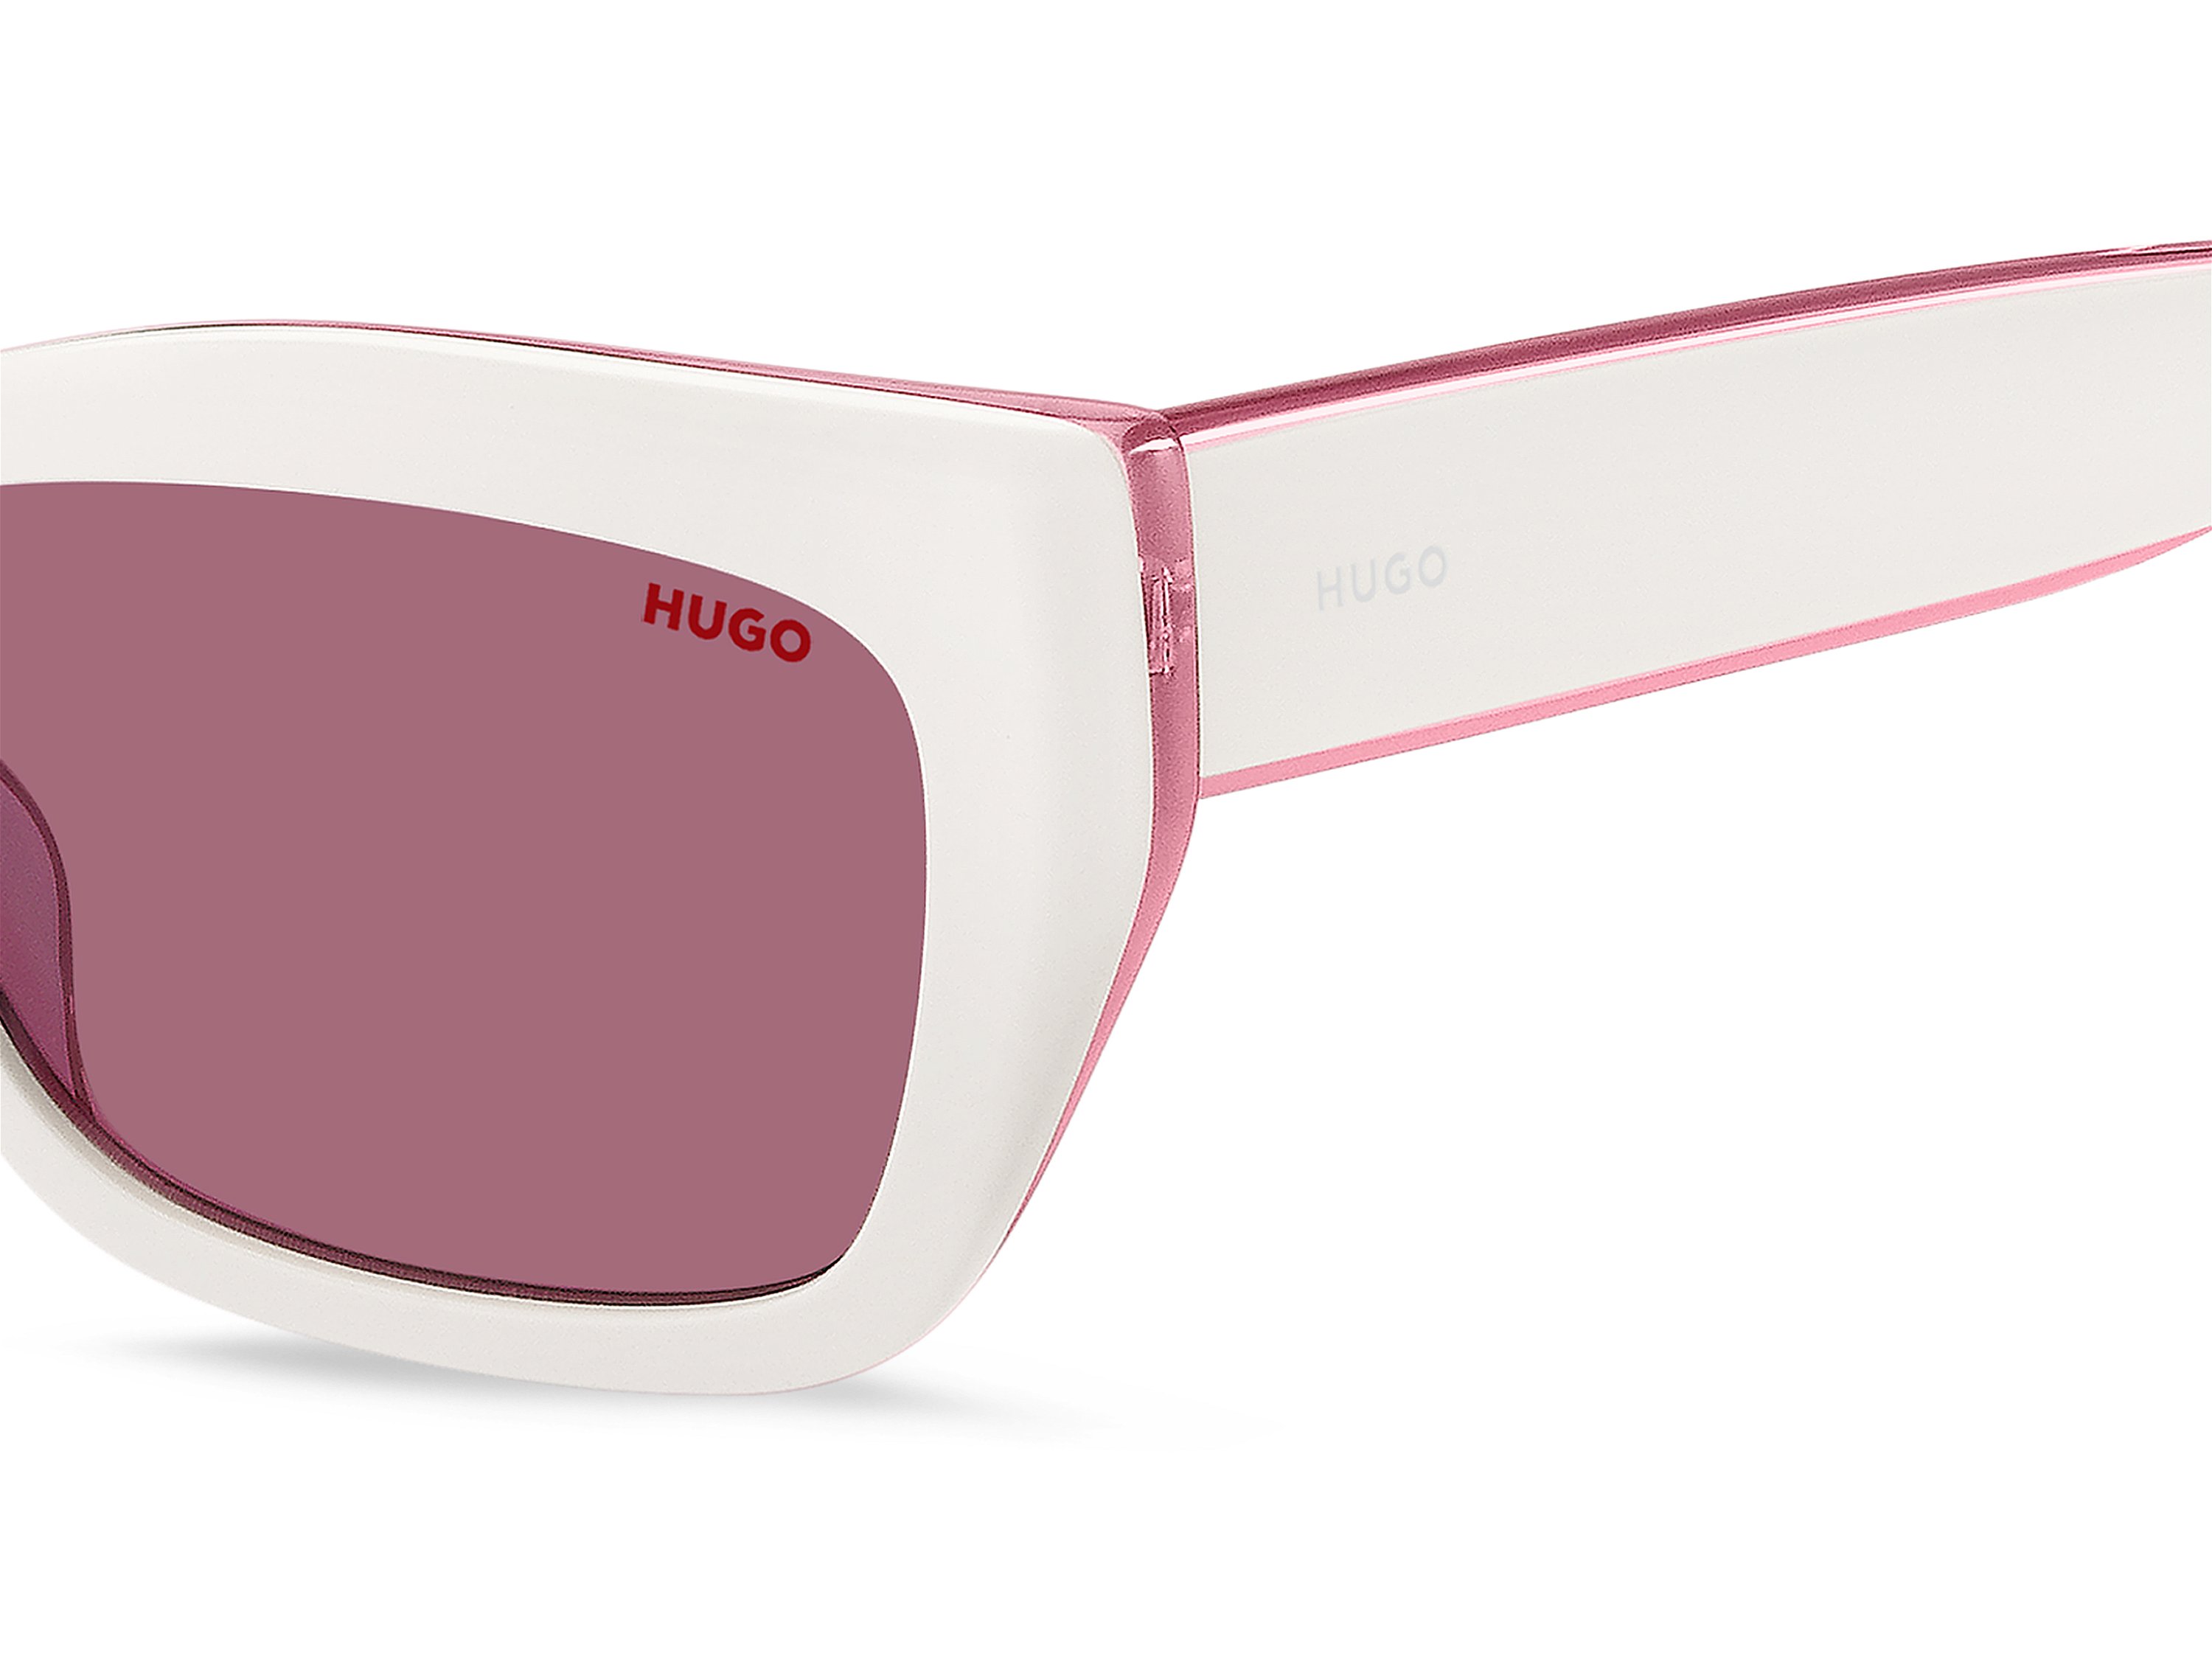 Das Bild zeigt die Sonnenbrille HG1301/S HDR von der Marke Hugo in weiß.